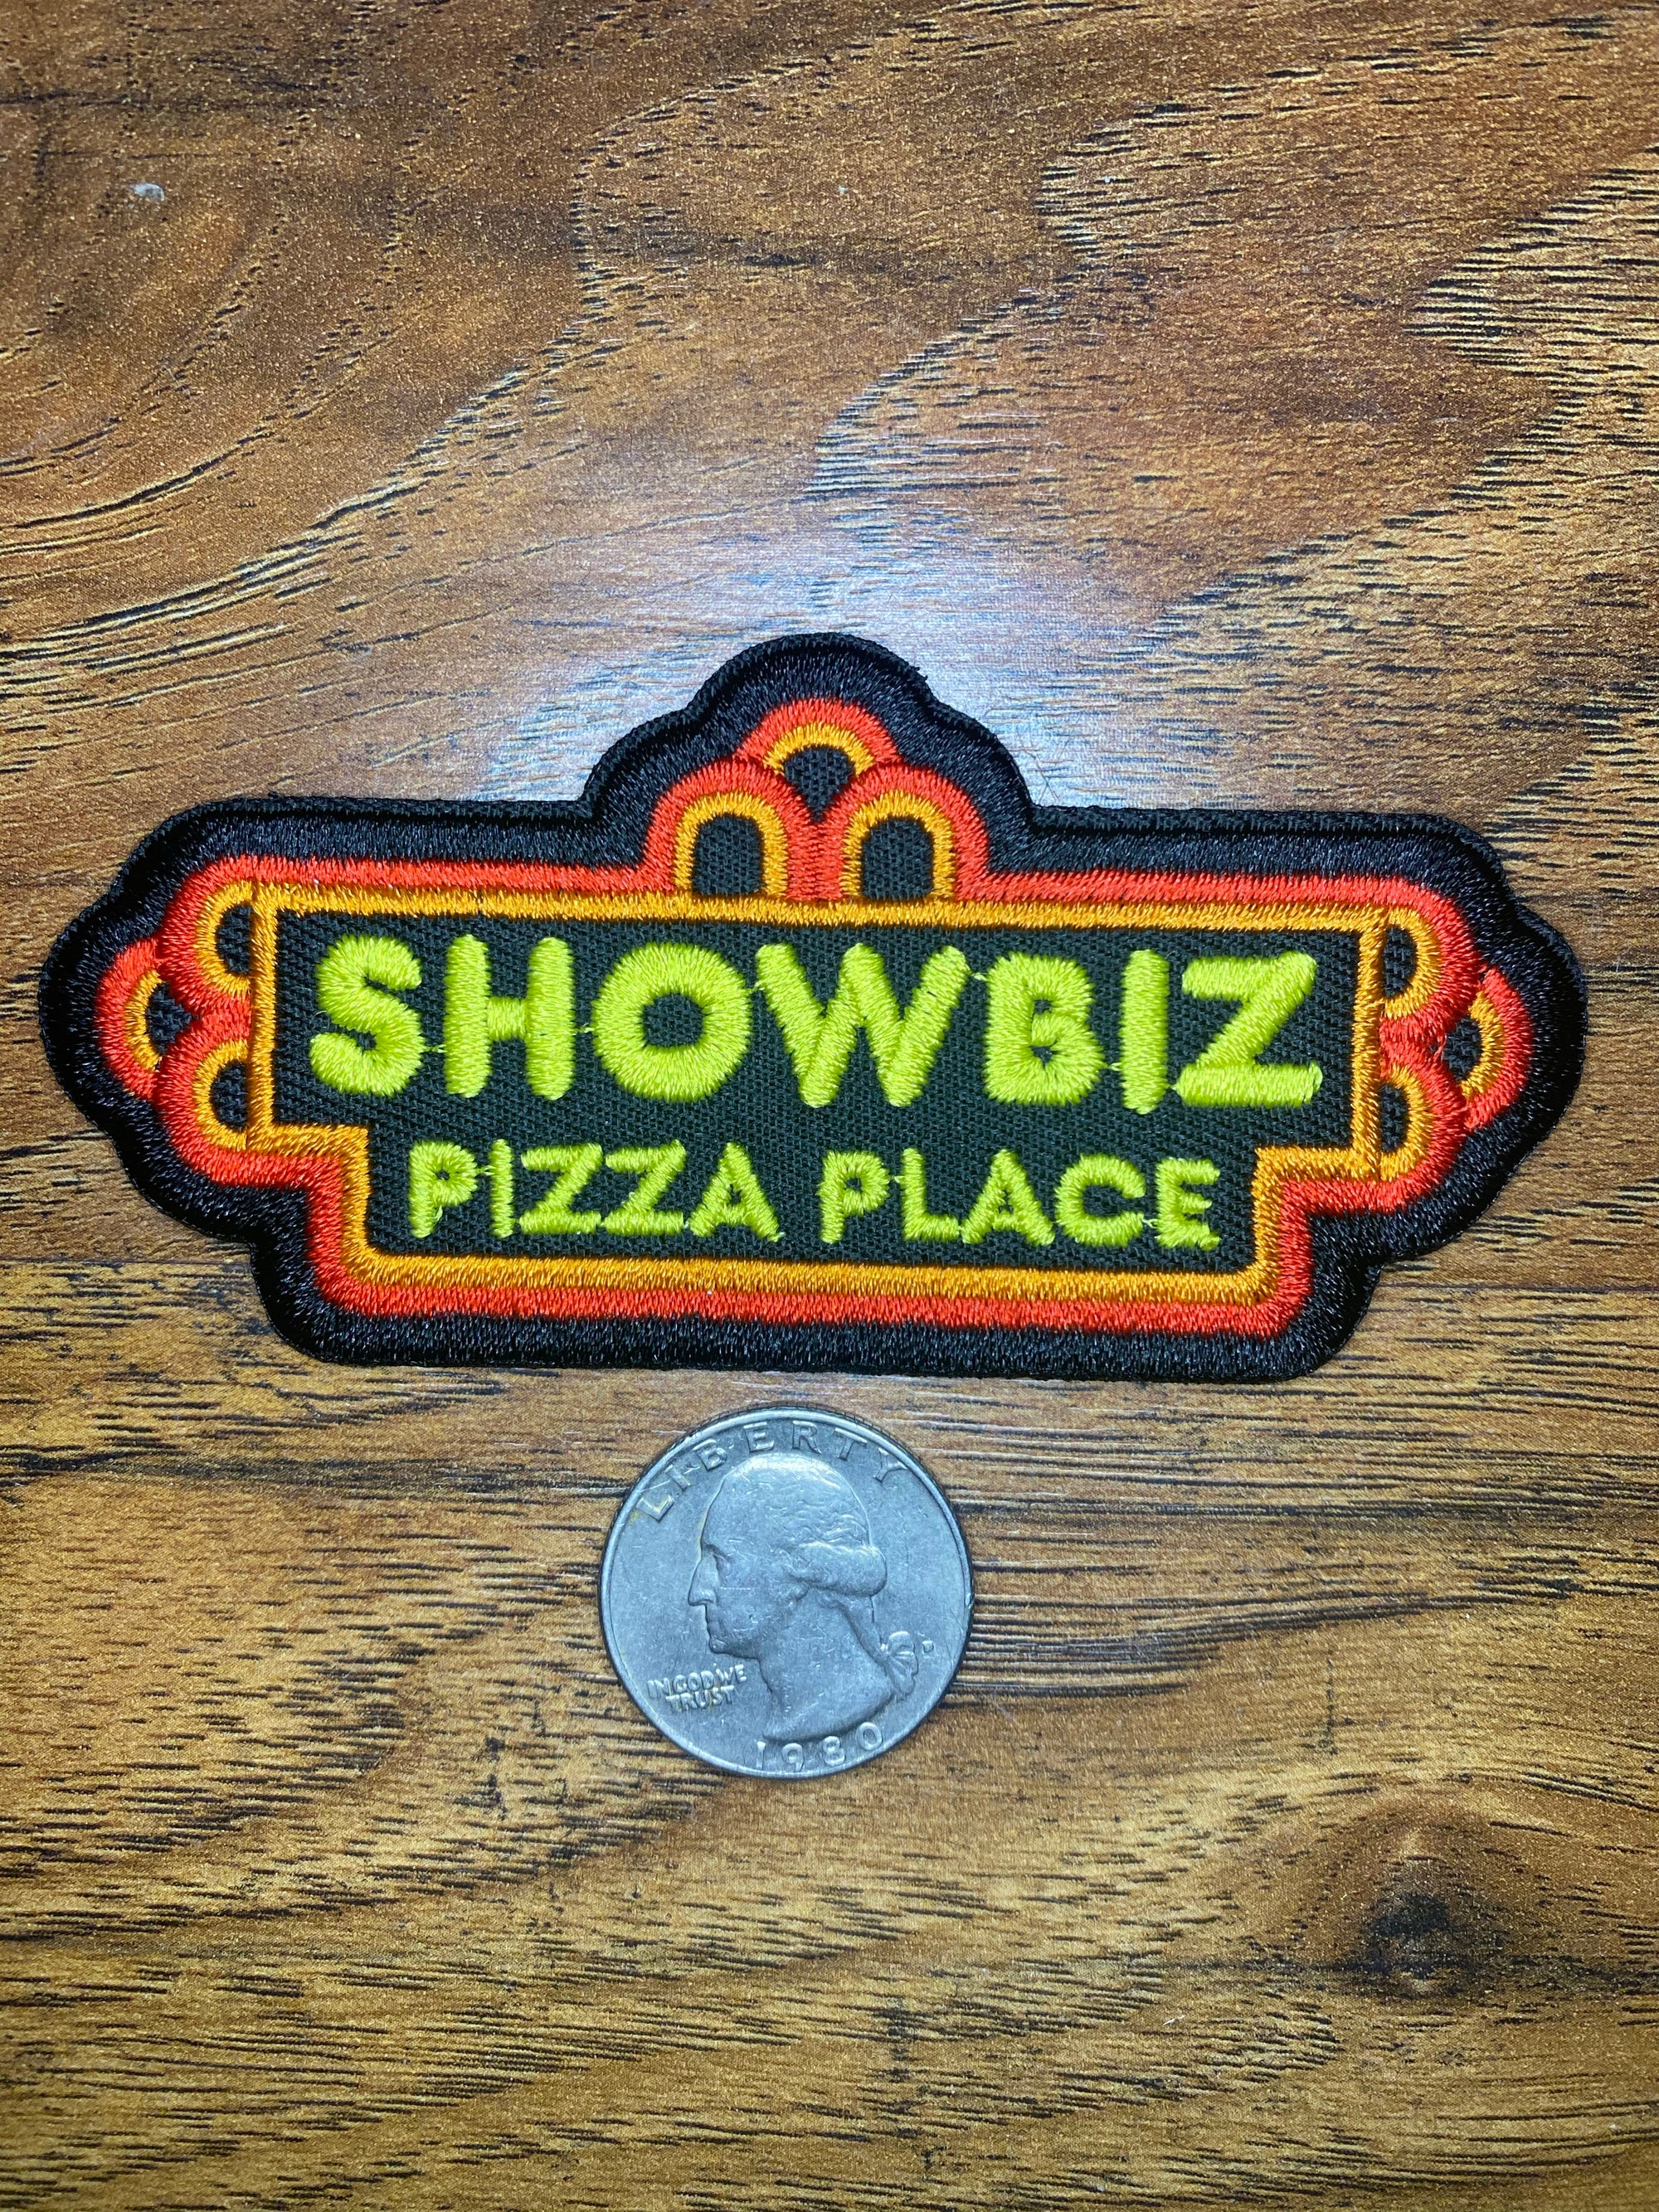 Vintage Showbiz Pizza Place